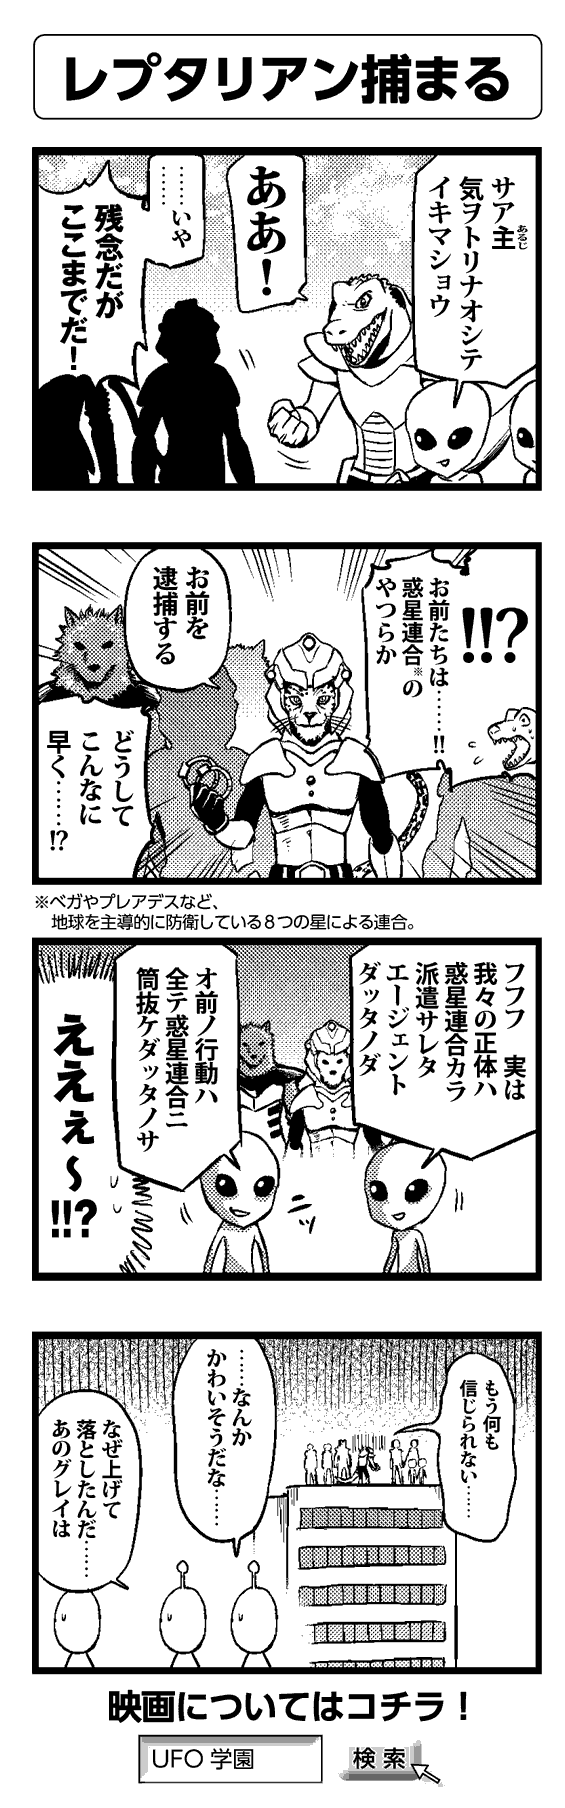 レプタリアン捕まる - 四コマ漫画ノンフィクション #022